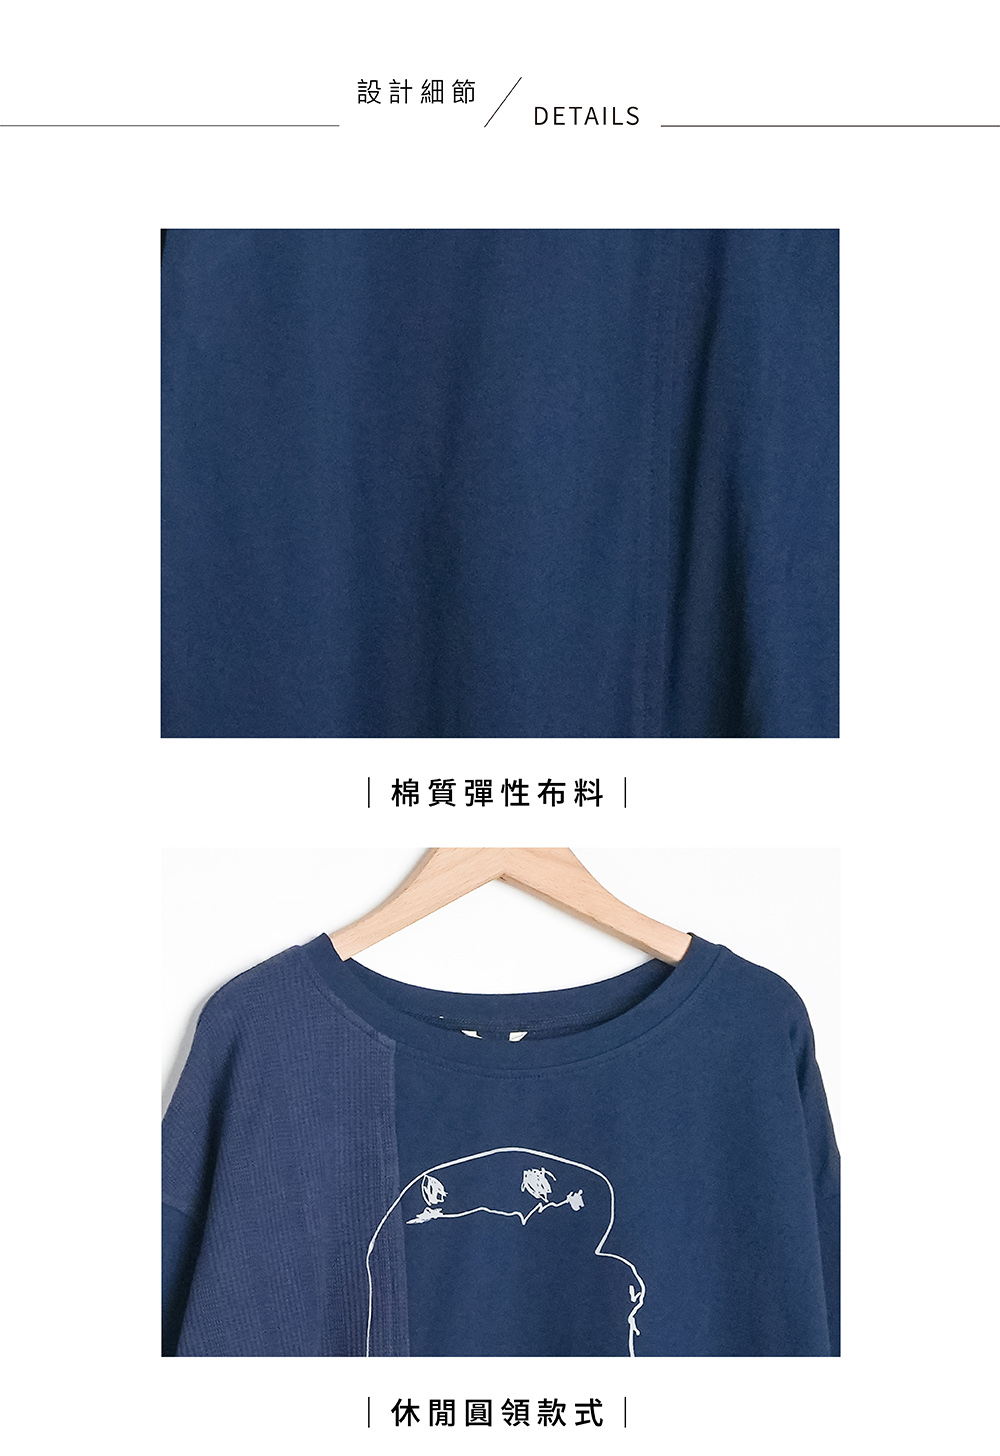 MOSS CLUB 龍貓幽靈異材質拼接七分袖上衣(藍 黑 白